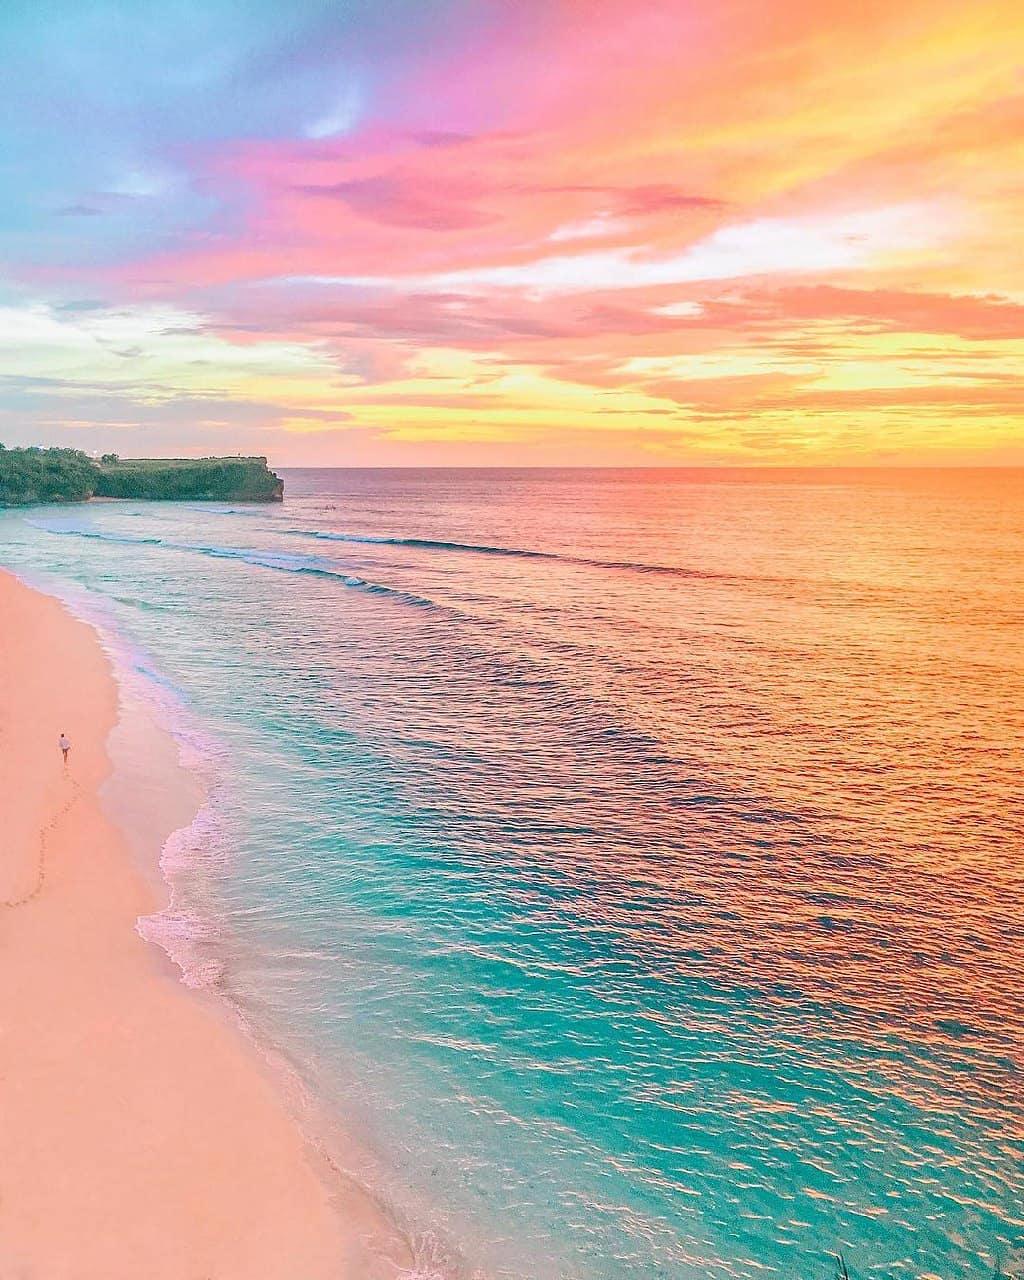  印尼巴厘岛彩虹色的沙滩海岸，来自摄影师WAHYU MAHENDRA。 